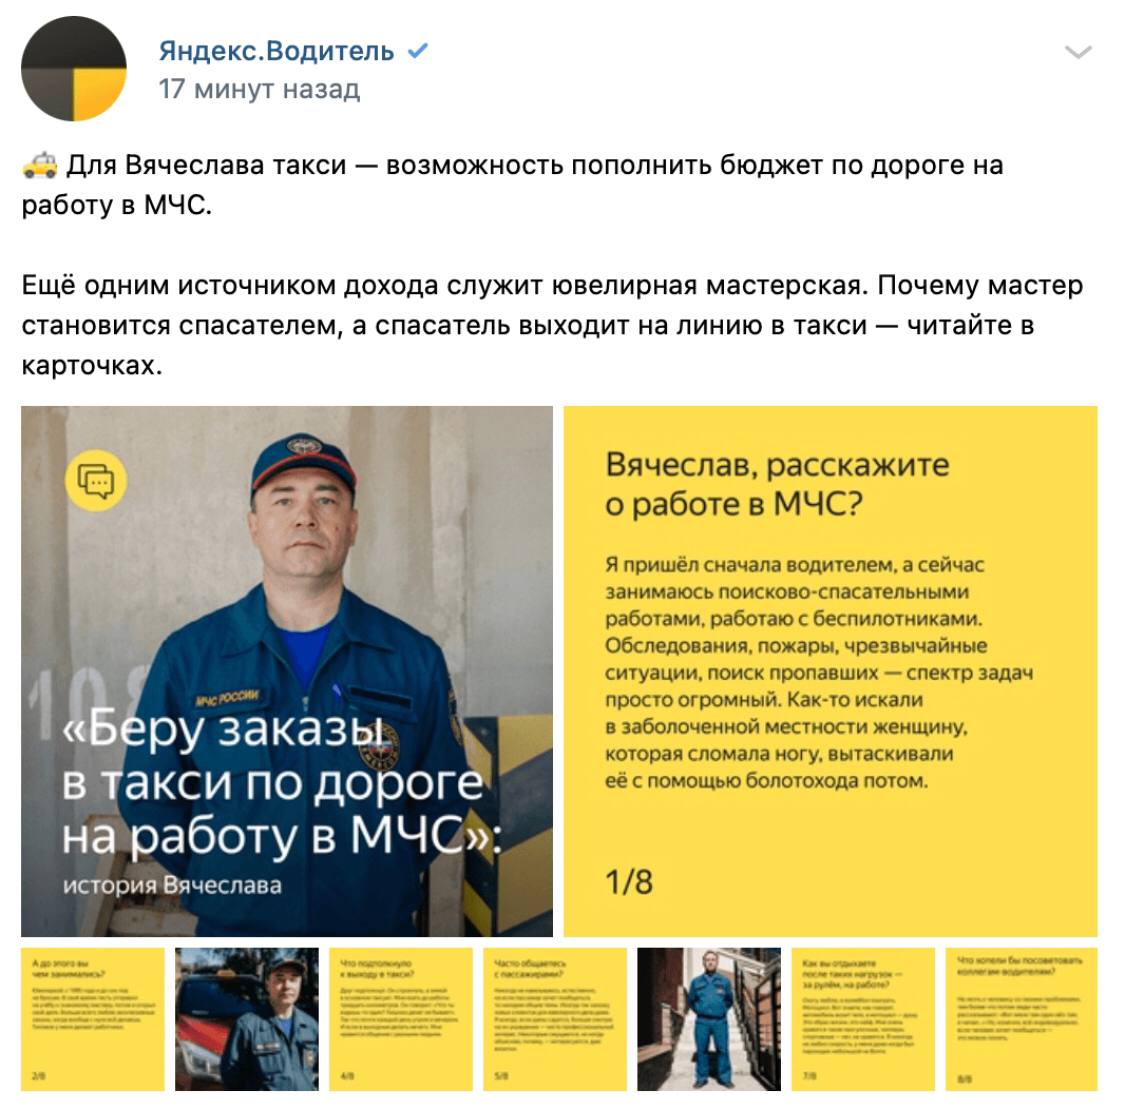 Яндекс «сдал» сотрудника МЧС, подрабатывавшего в такси - 1